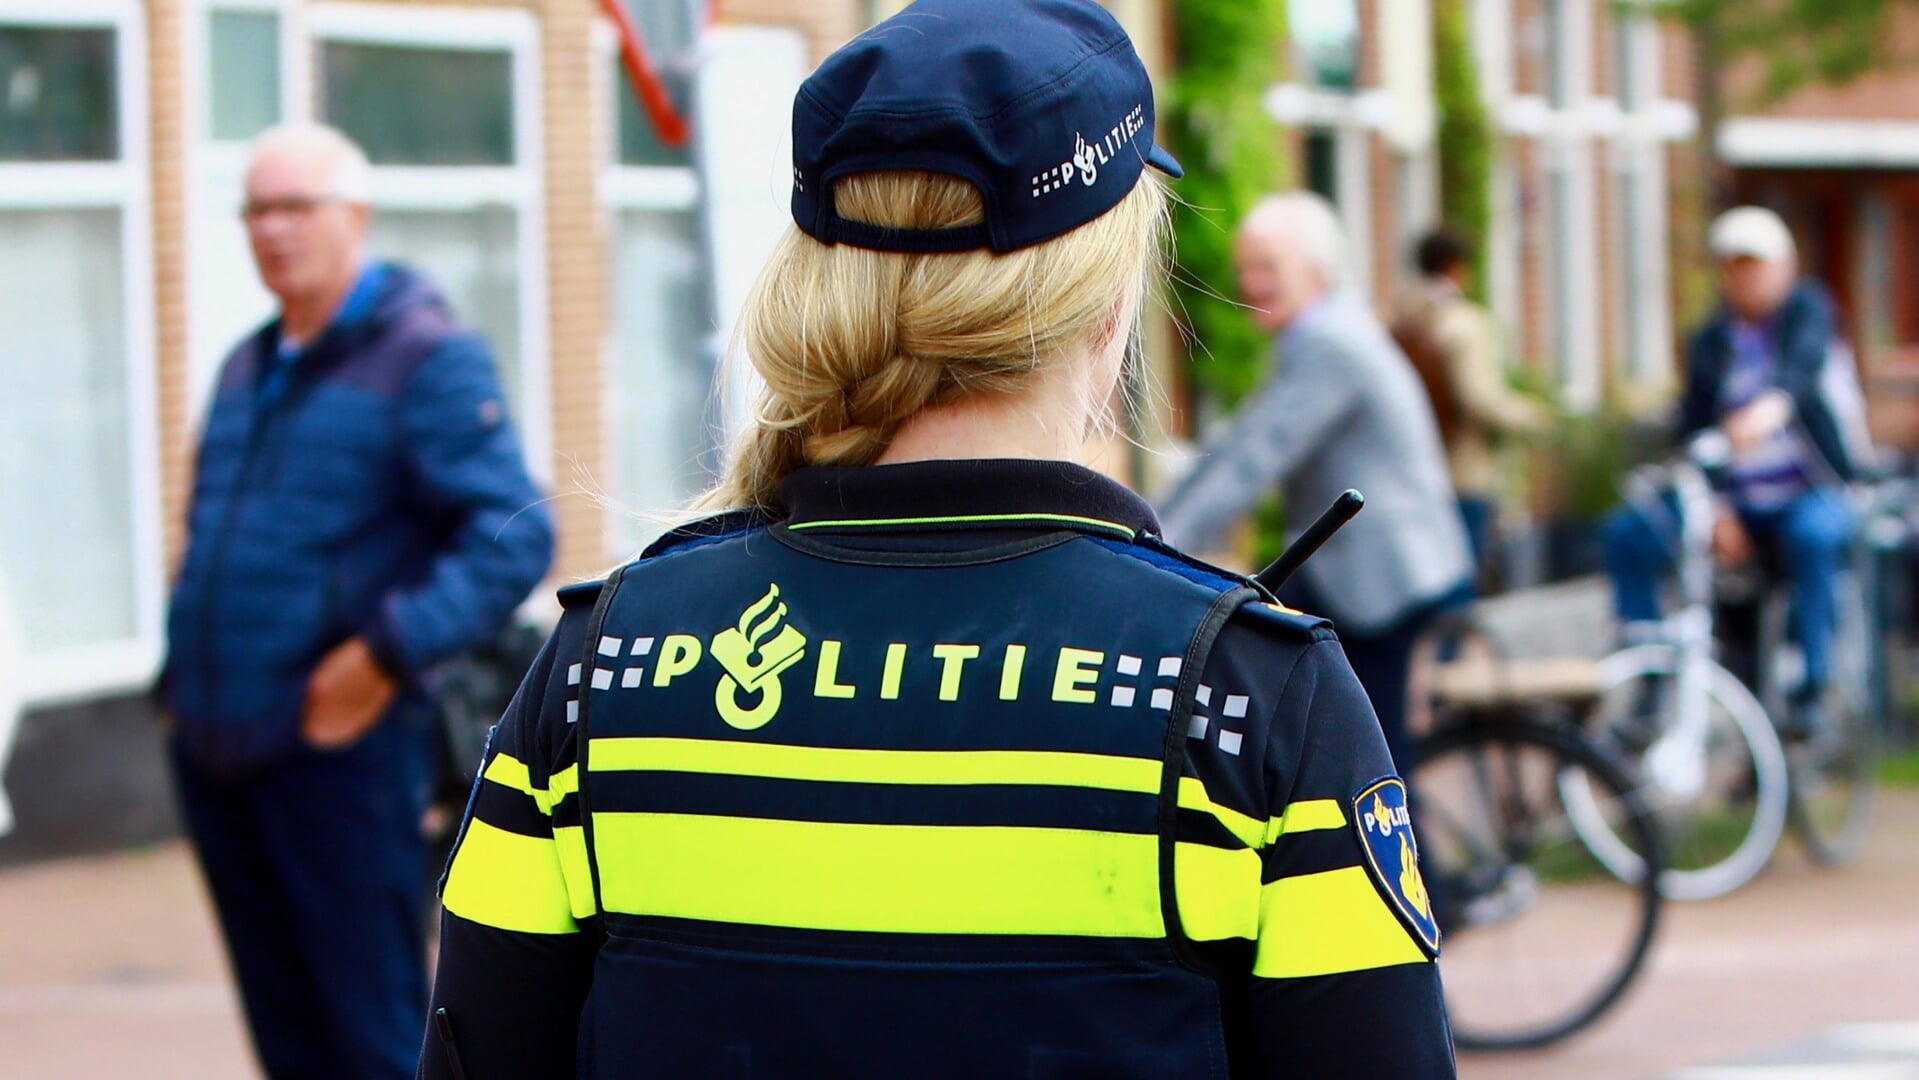 'De politie heeft de handen vol aan incidenten met verwarde personen' (Foto: Koos Bommelé)